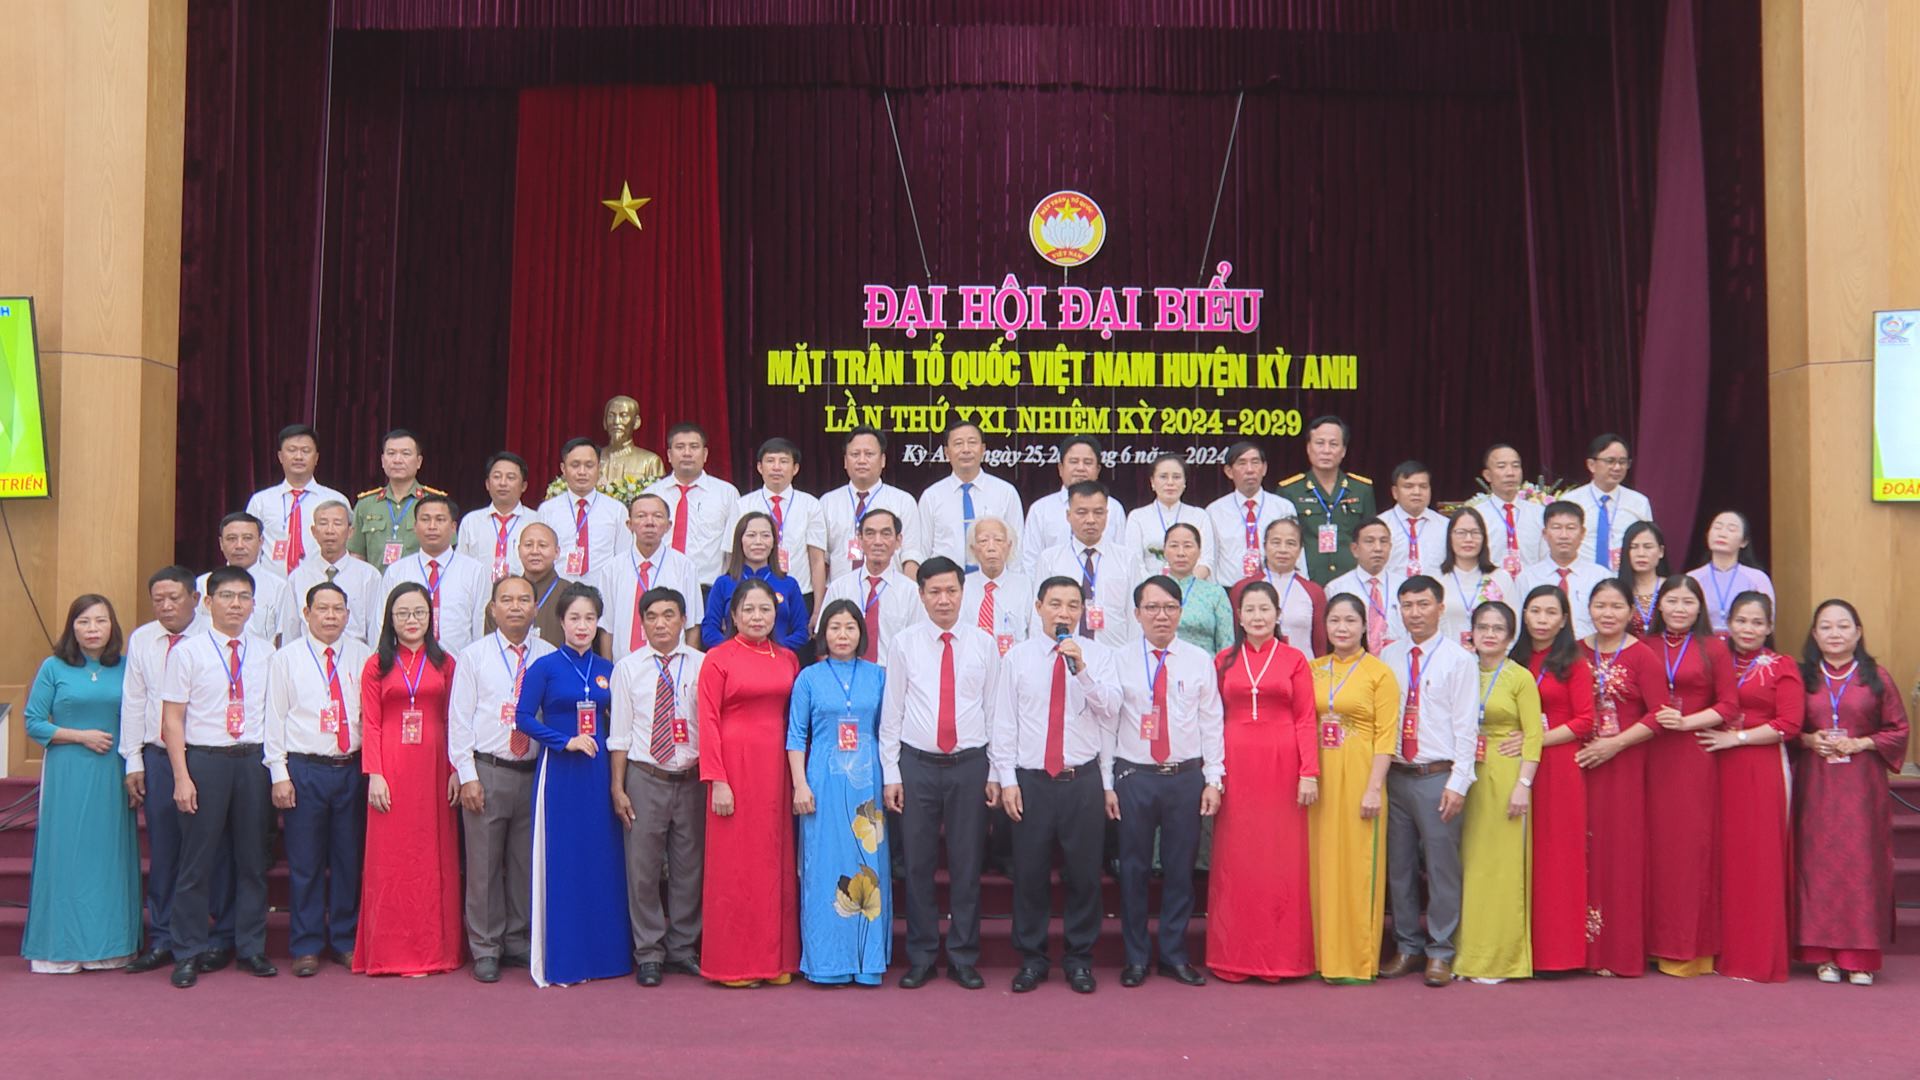 Đại hội đại biểu Mặt trận Tổ quốc Việt Nam huyện Kỳ Anh lần thứ XXI, nhiệm kỳ 2024-2029